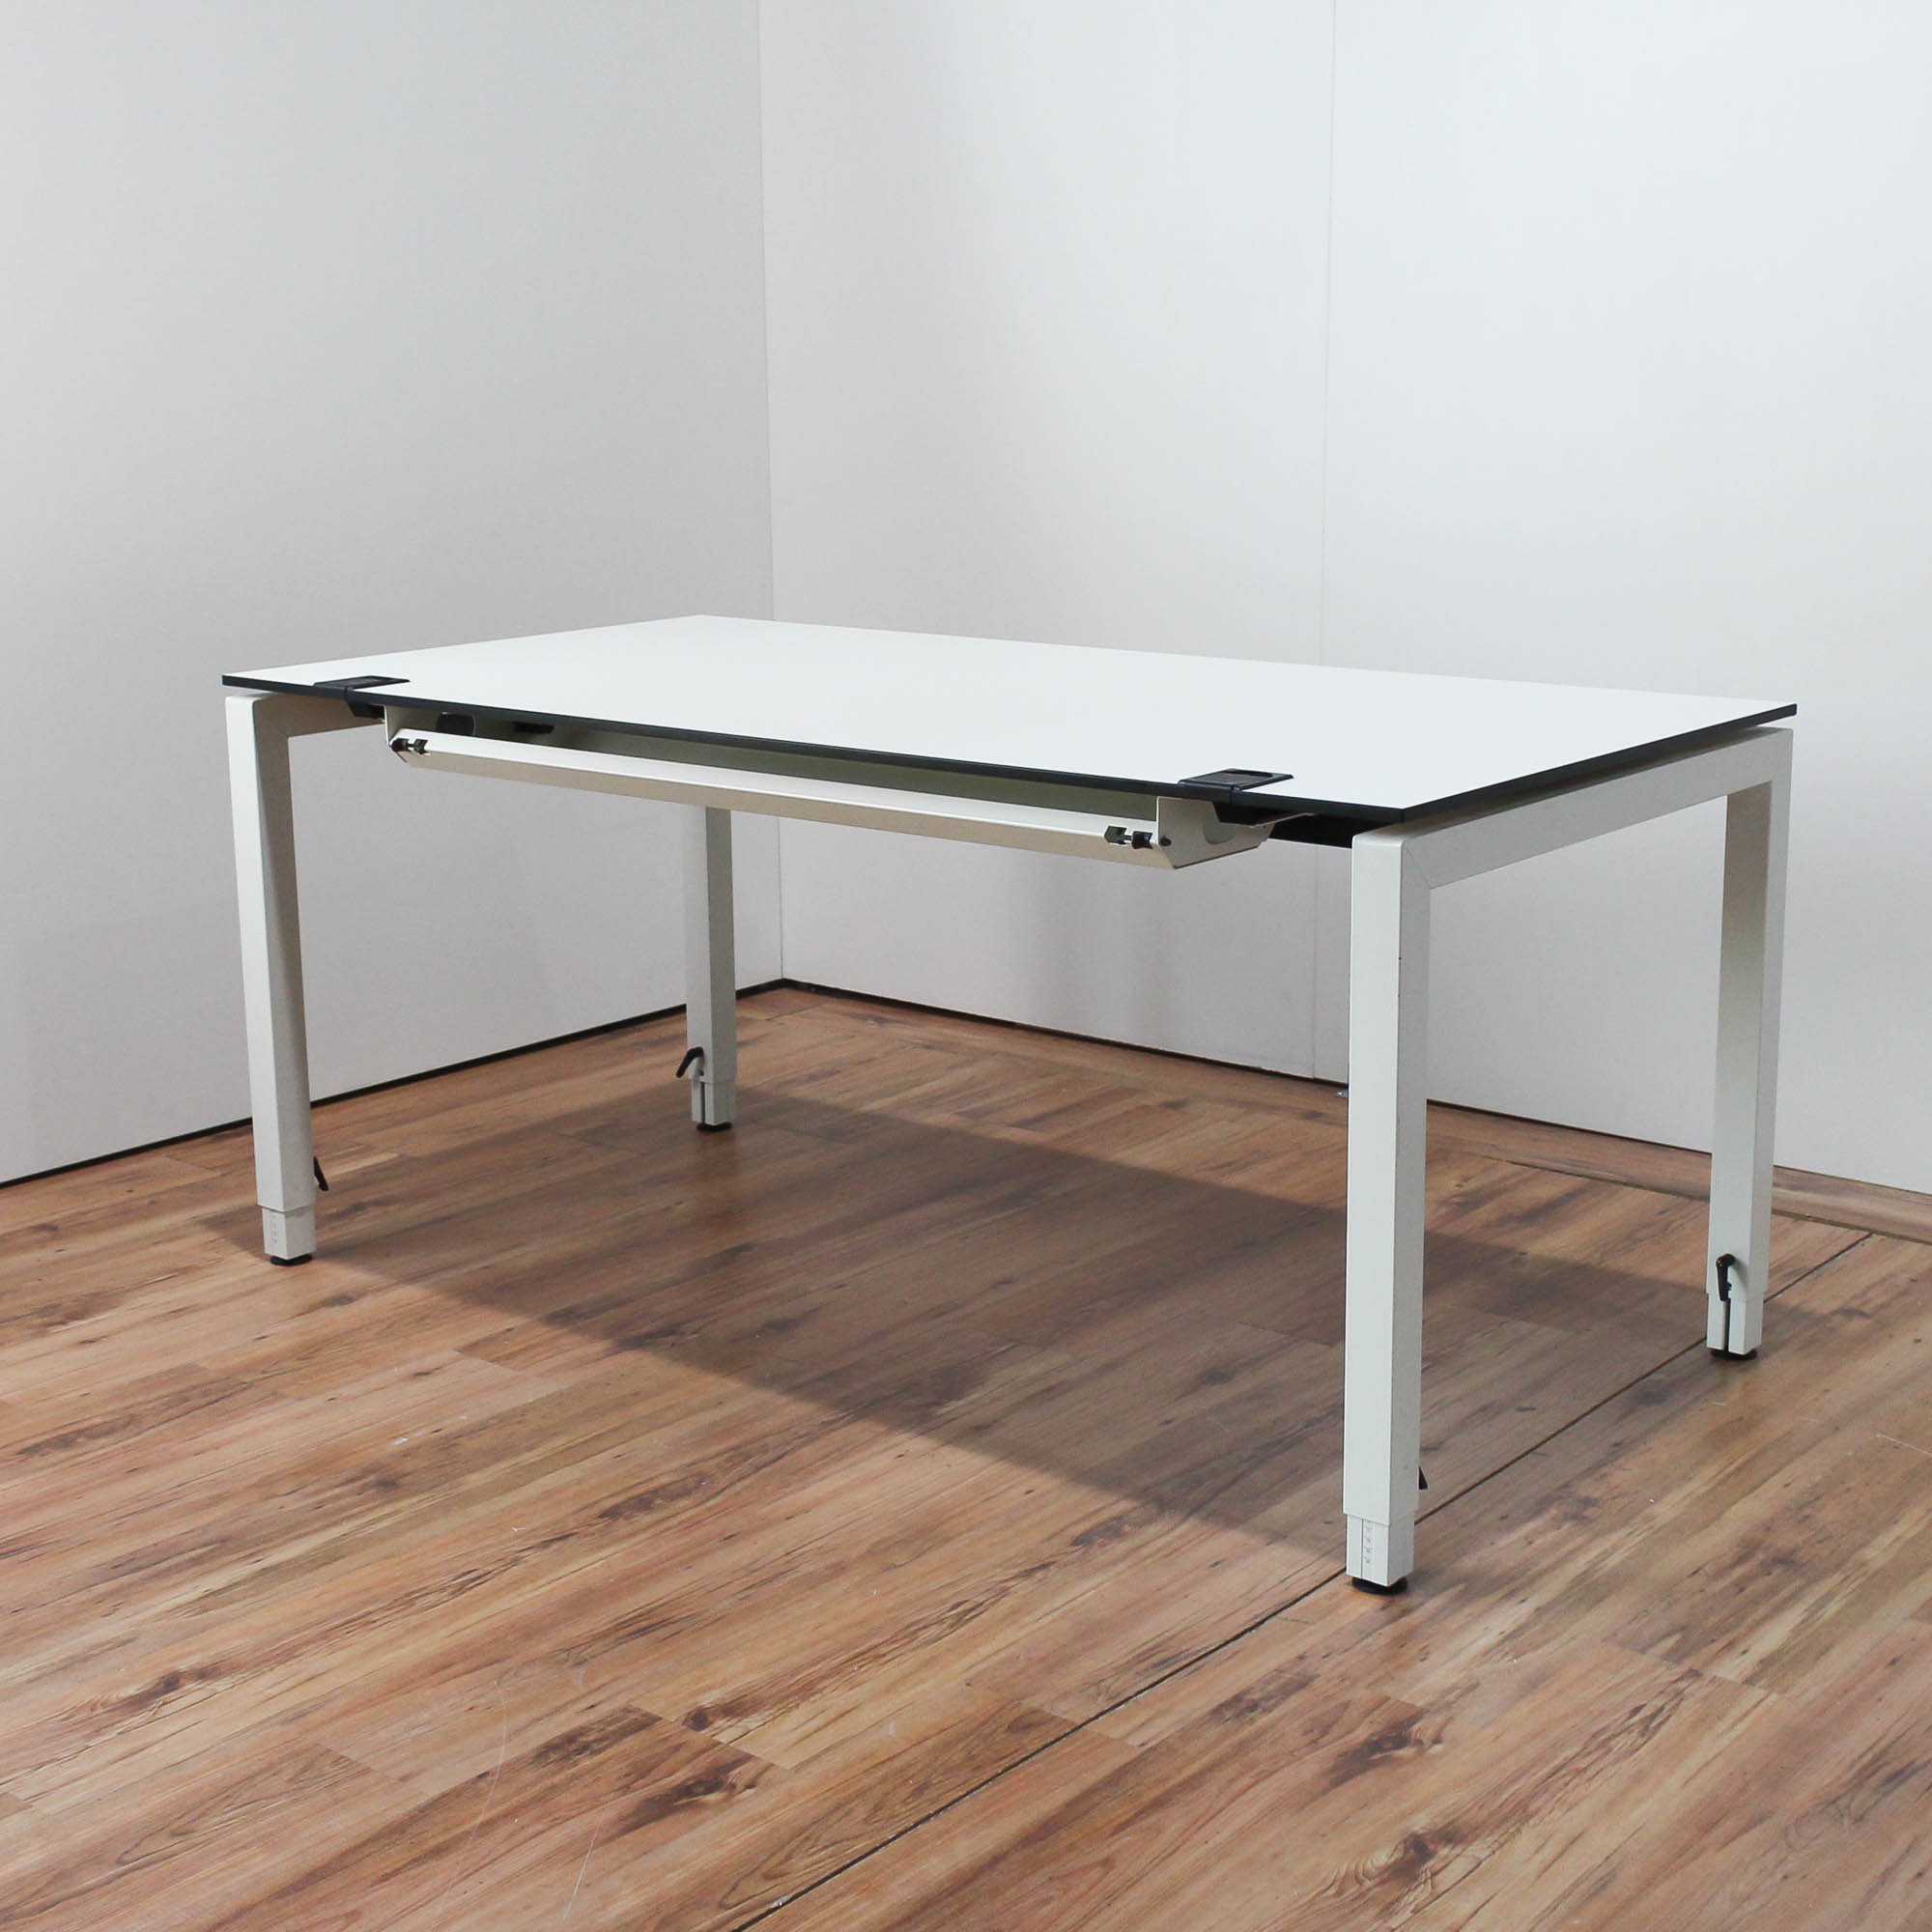 Samas Schreibtisch - 160x80cm in weiß - Tischkante schwarz - 4-Fußgestell weiß